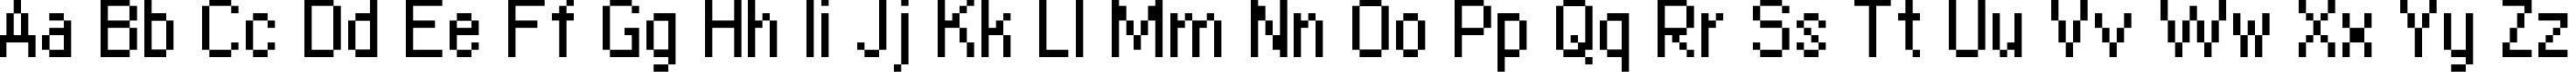 Пример написания английского алфавита шрифтом copy 08_55